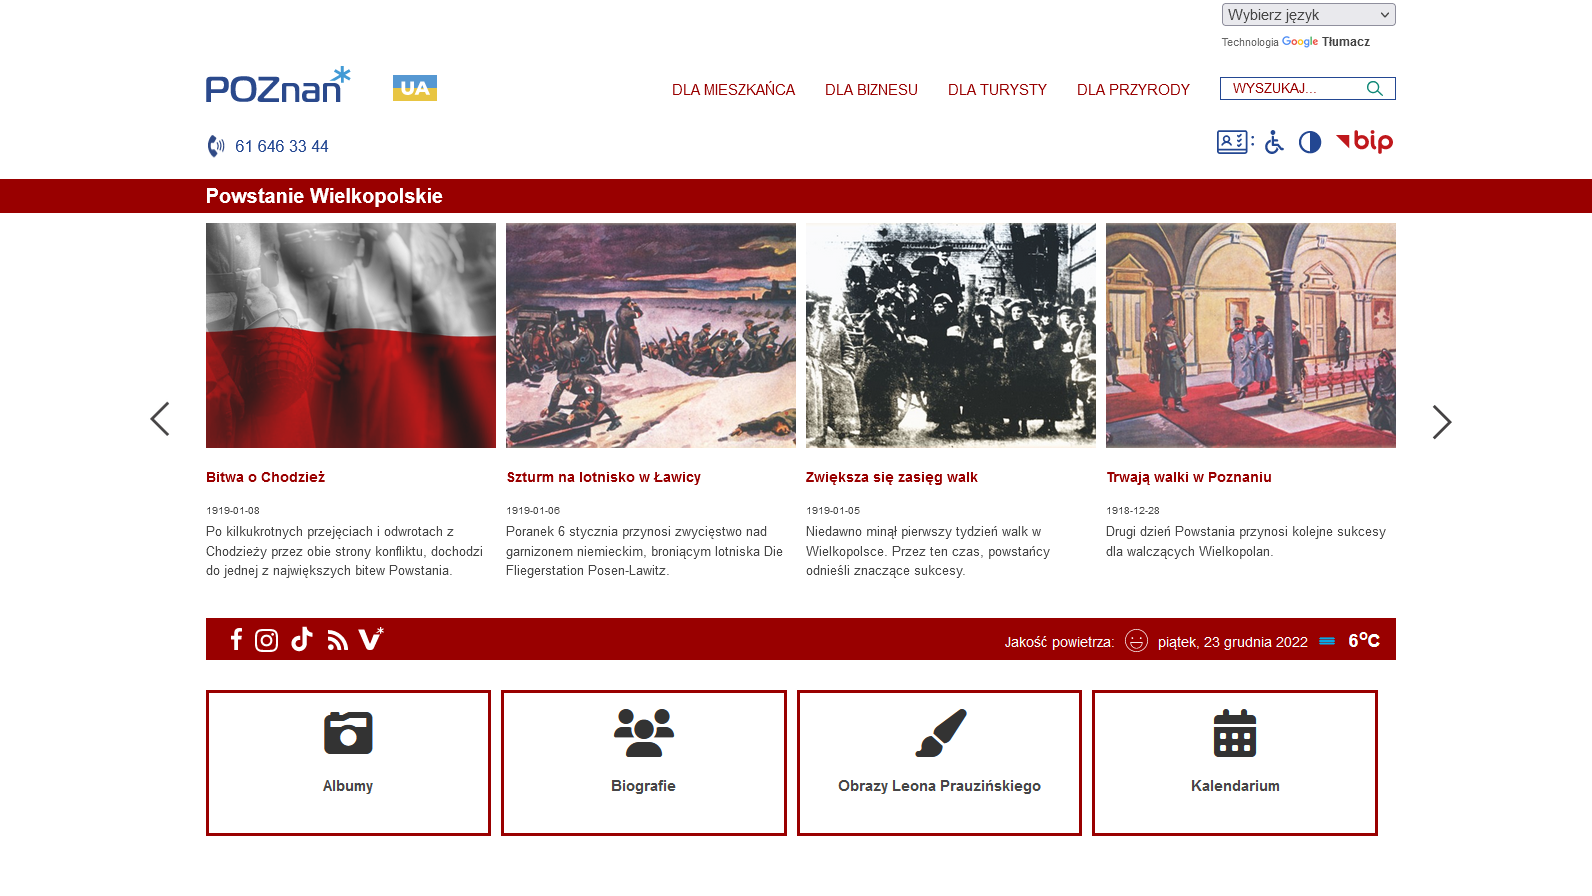 Zdjęcie to zrzut ekranu, przedstawiające widok glówny portalu o Powstaniu Wielkopolskim. - grafika artykułu